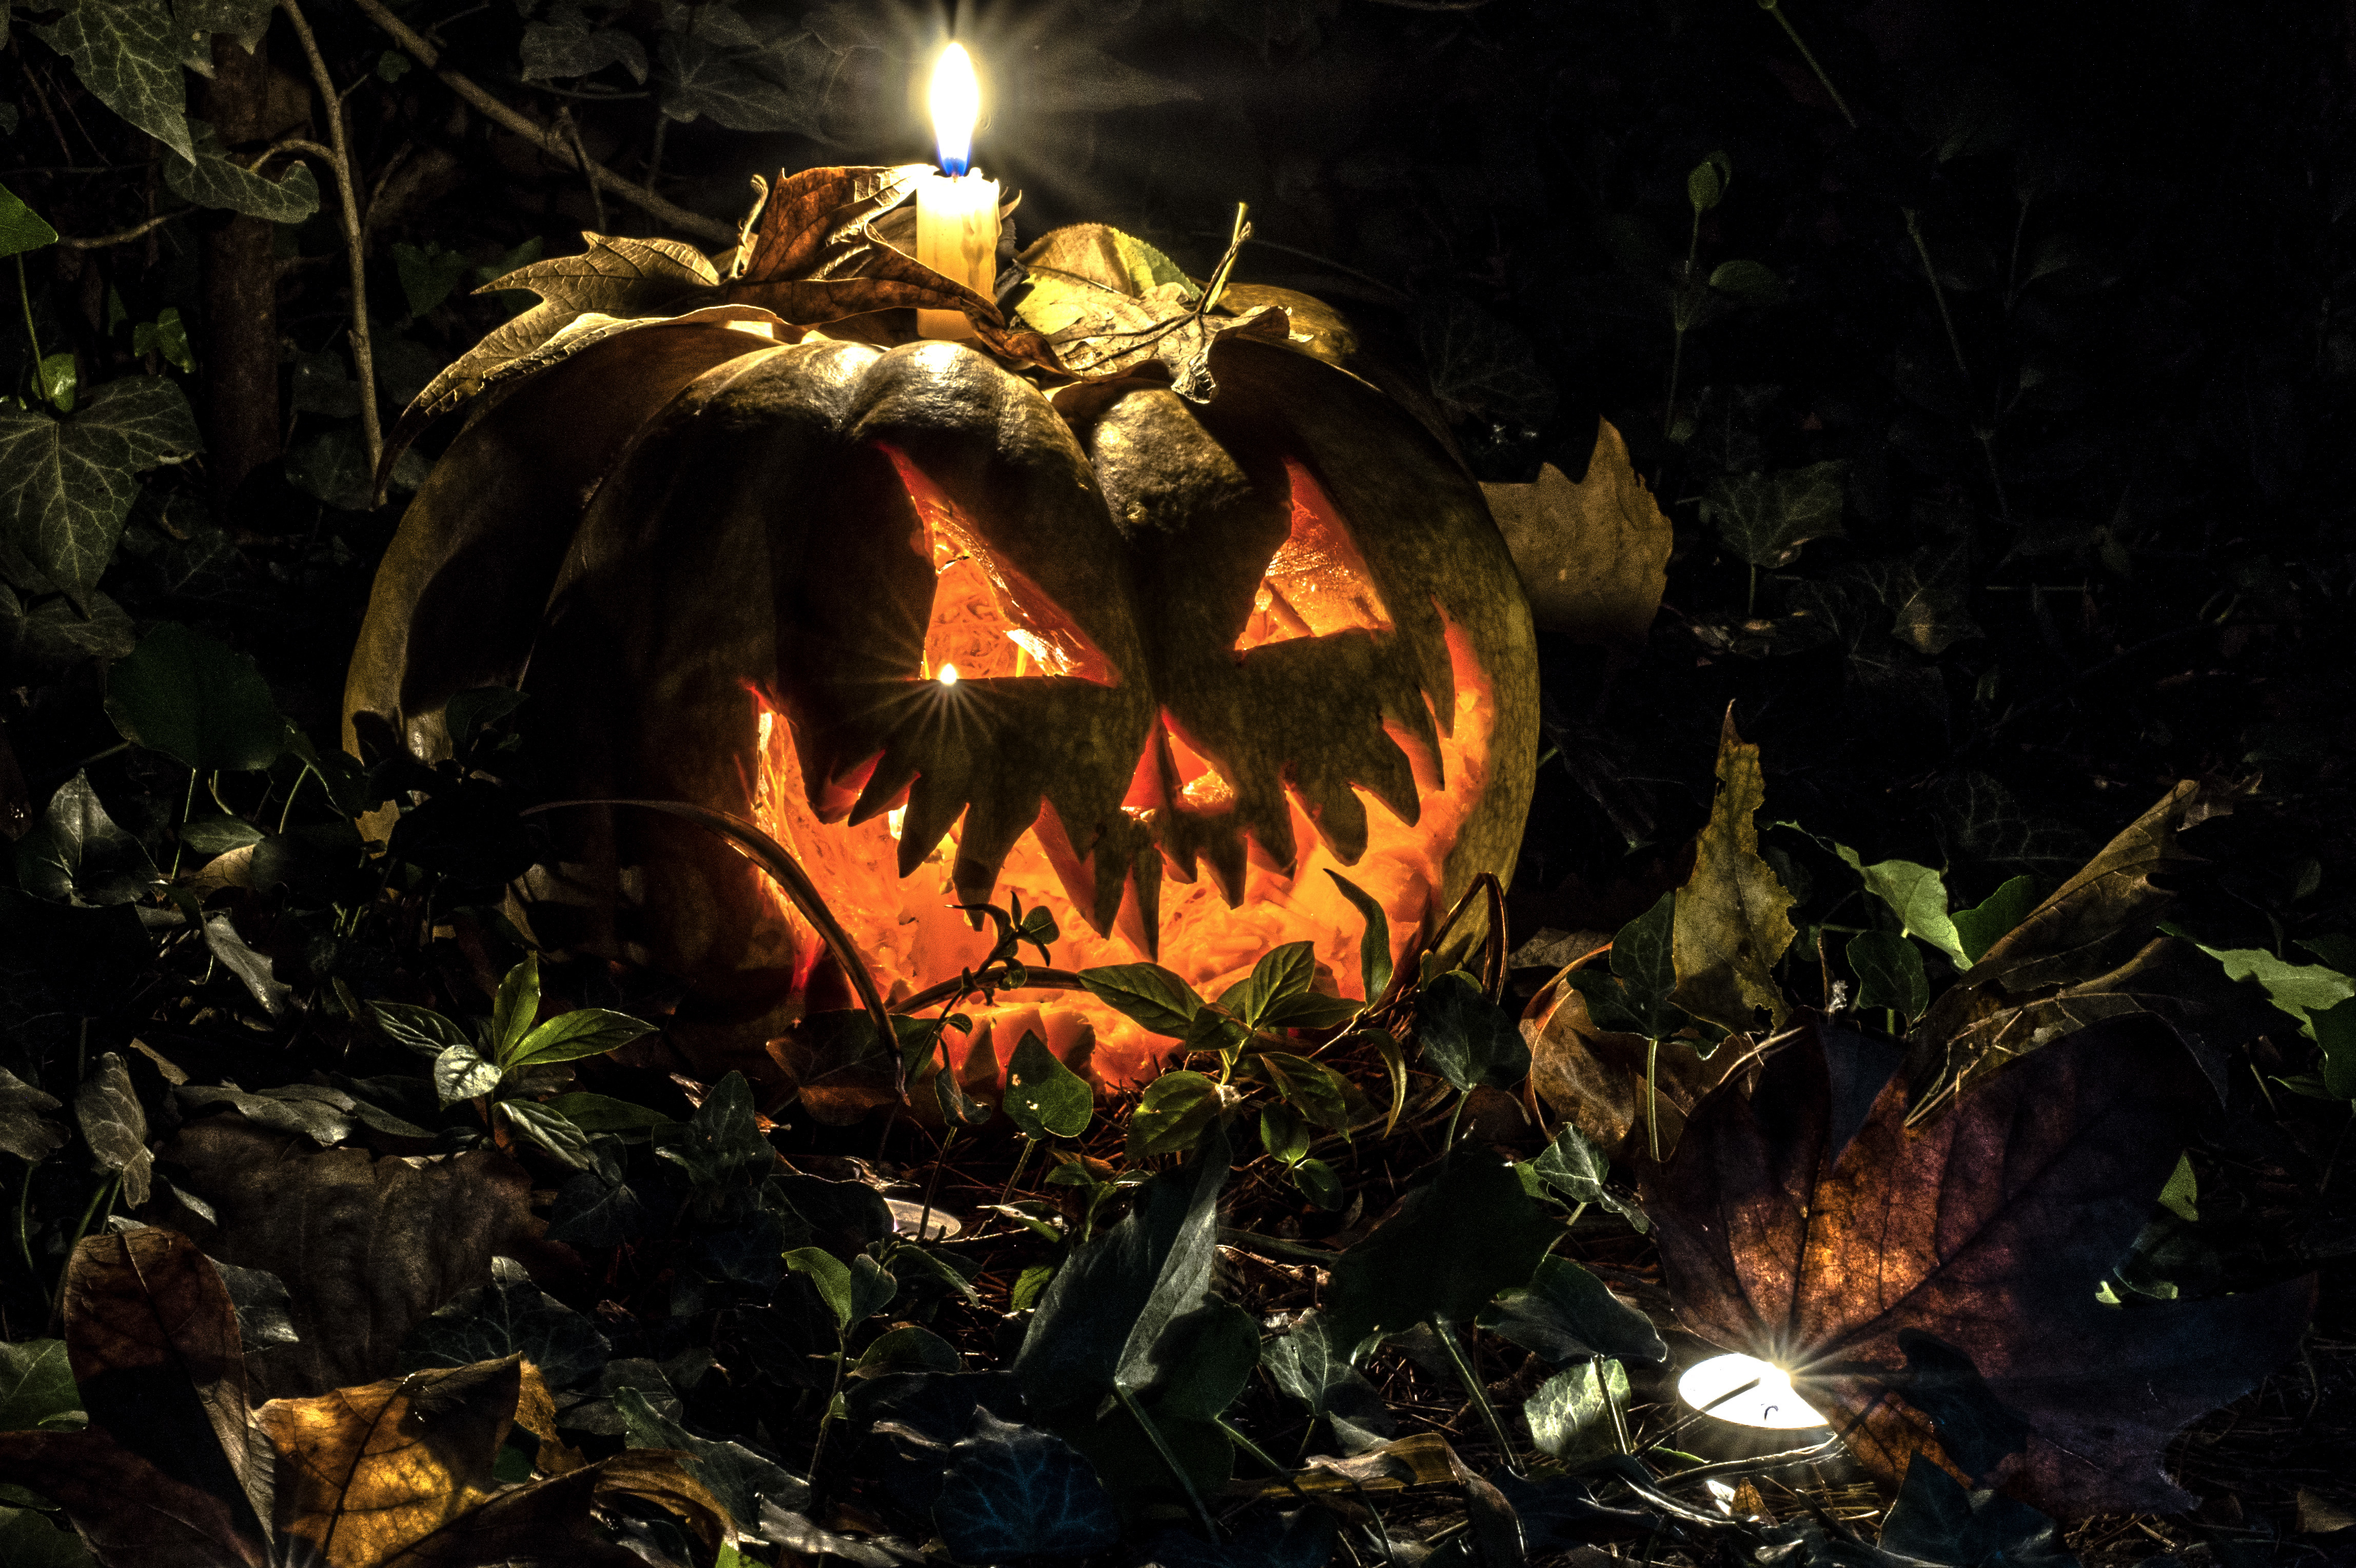 Hình nền Halloween 4K: Nâng cao trải nghiệm của bạn với những hình nền Halloween 4K đẹp mắt. Tận hưởng tất cả những chi tiết và màu sắc rực rỡ của những hình ảnh tuyệt đẹp này. Bạn sẽ tìm thấy một thế giới mới hoàn toàn khi nhìn vào màn hình của mình trong ngày Halloween này.